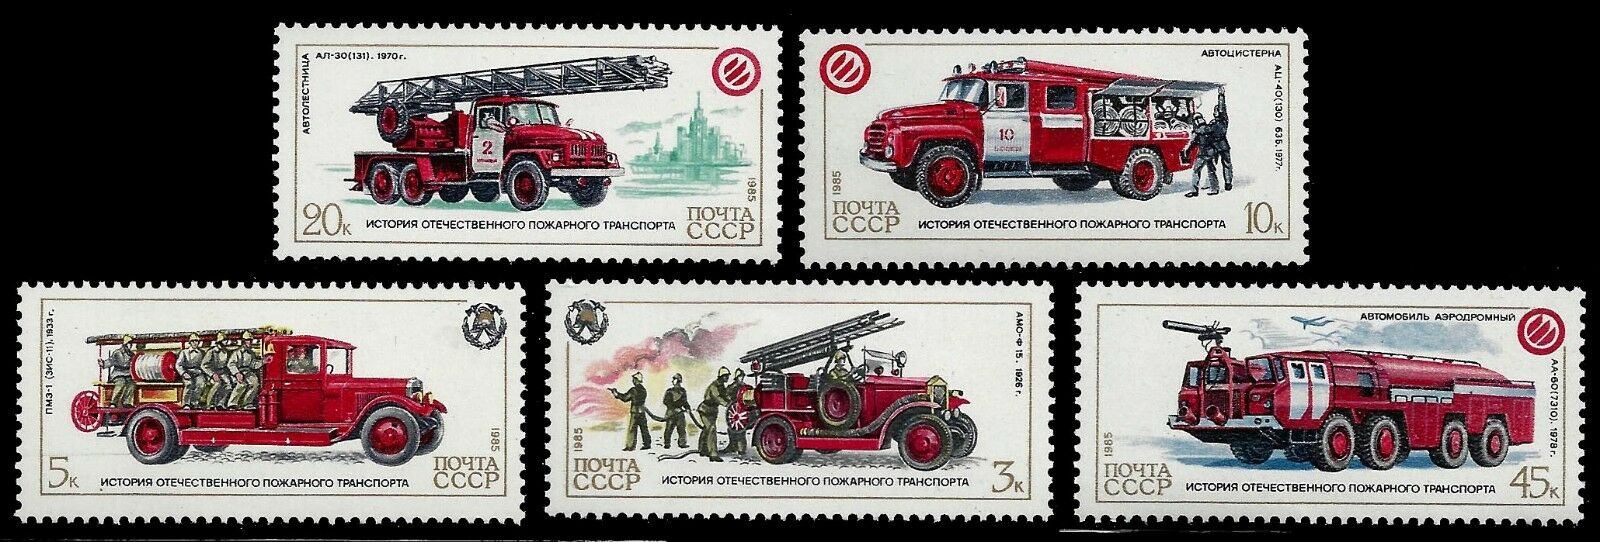 URSS 1985 - Masini de pompieri, serie neuzata